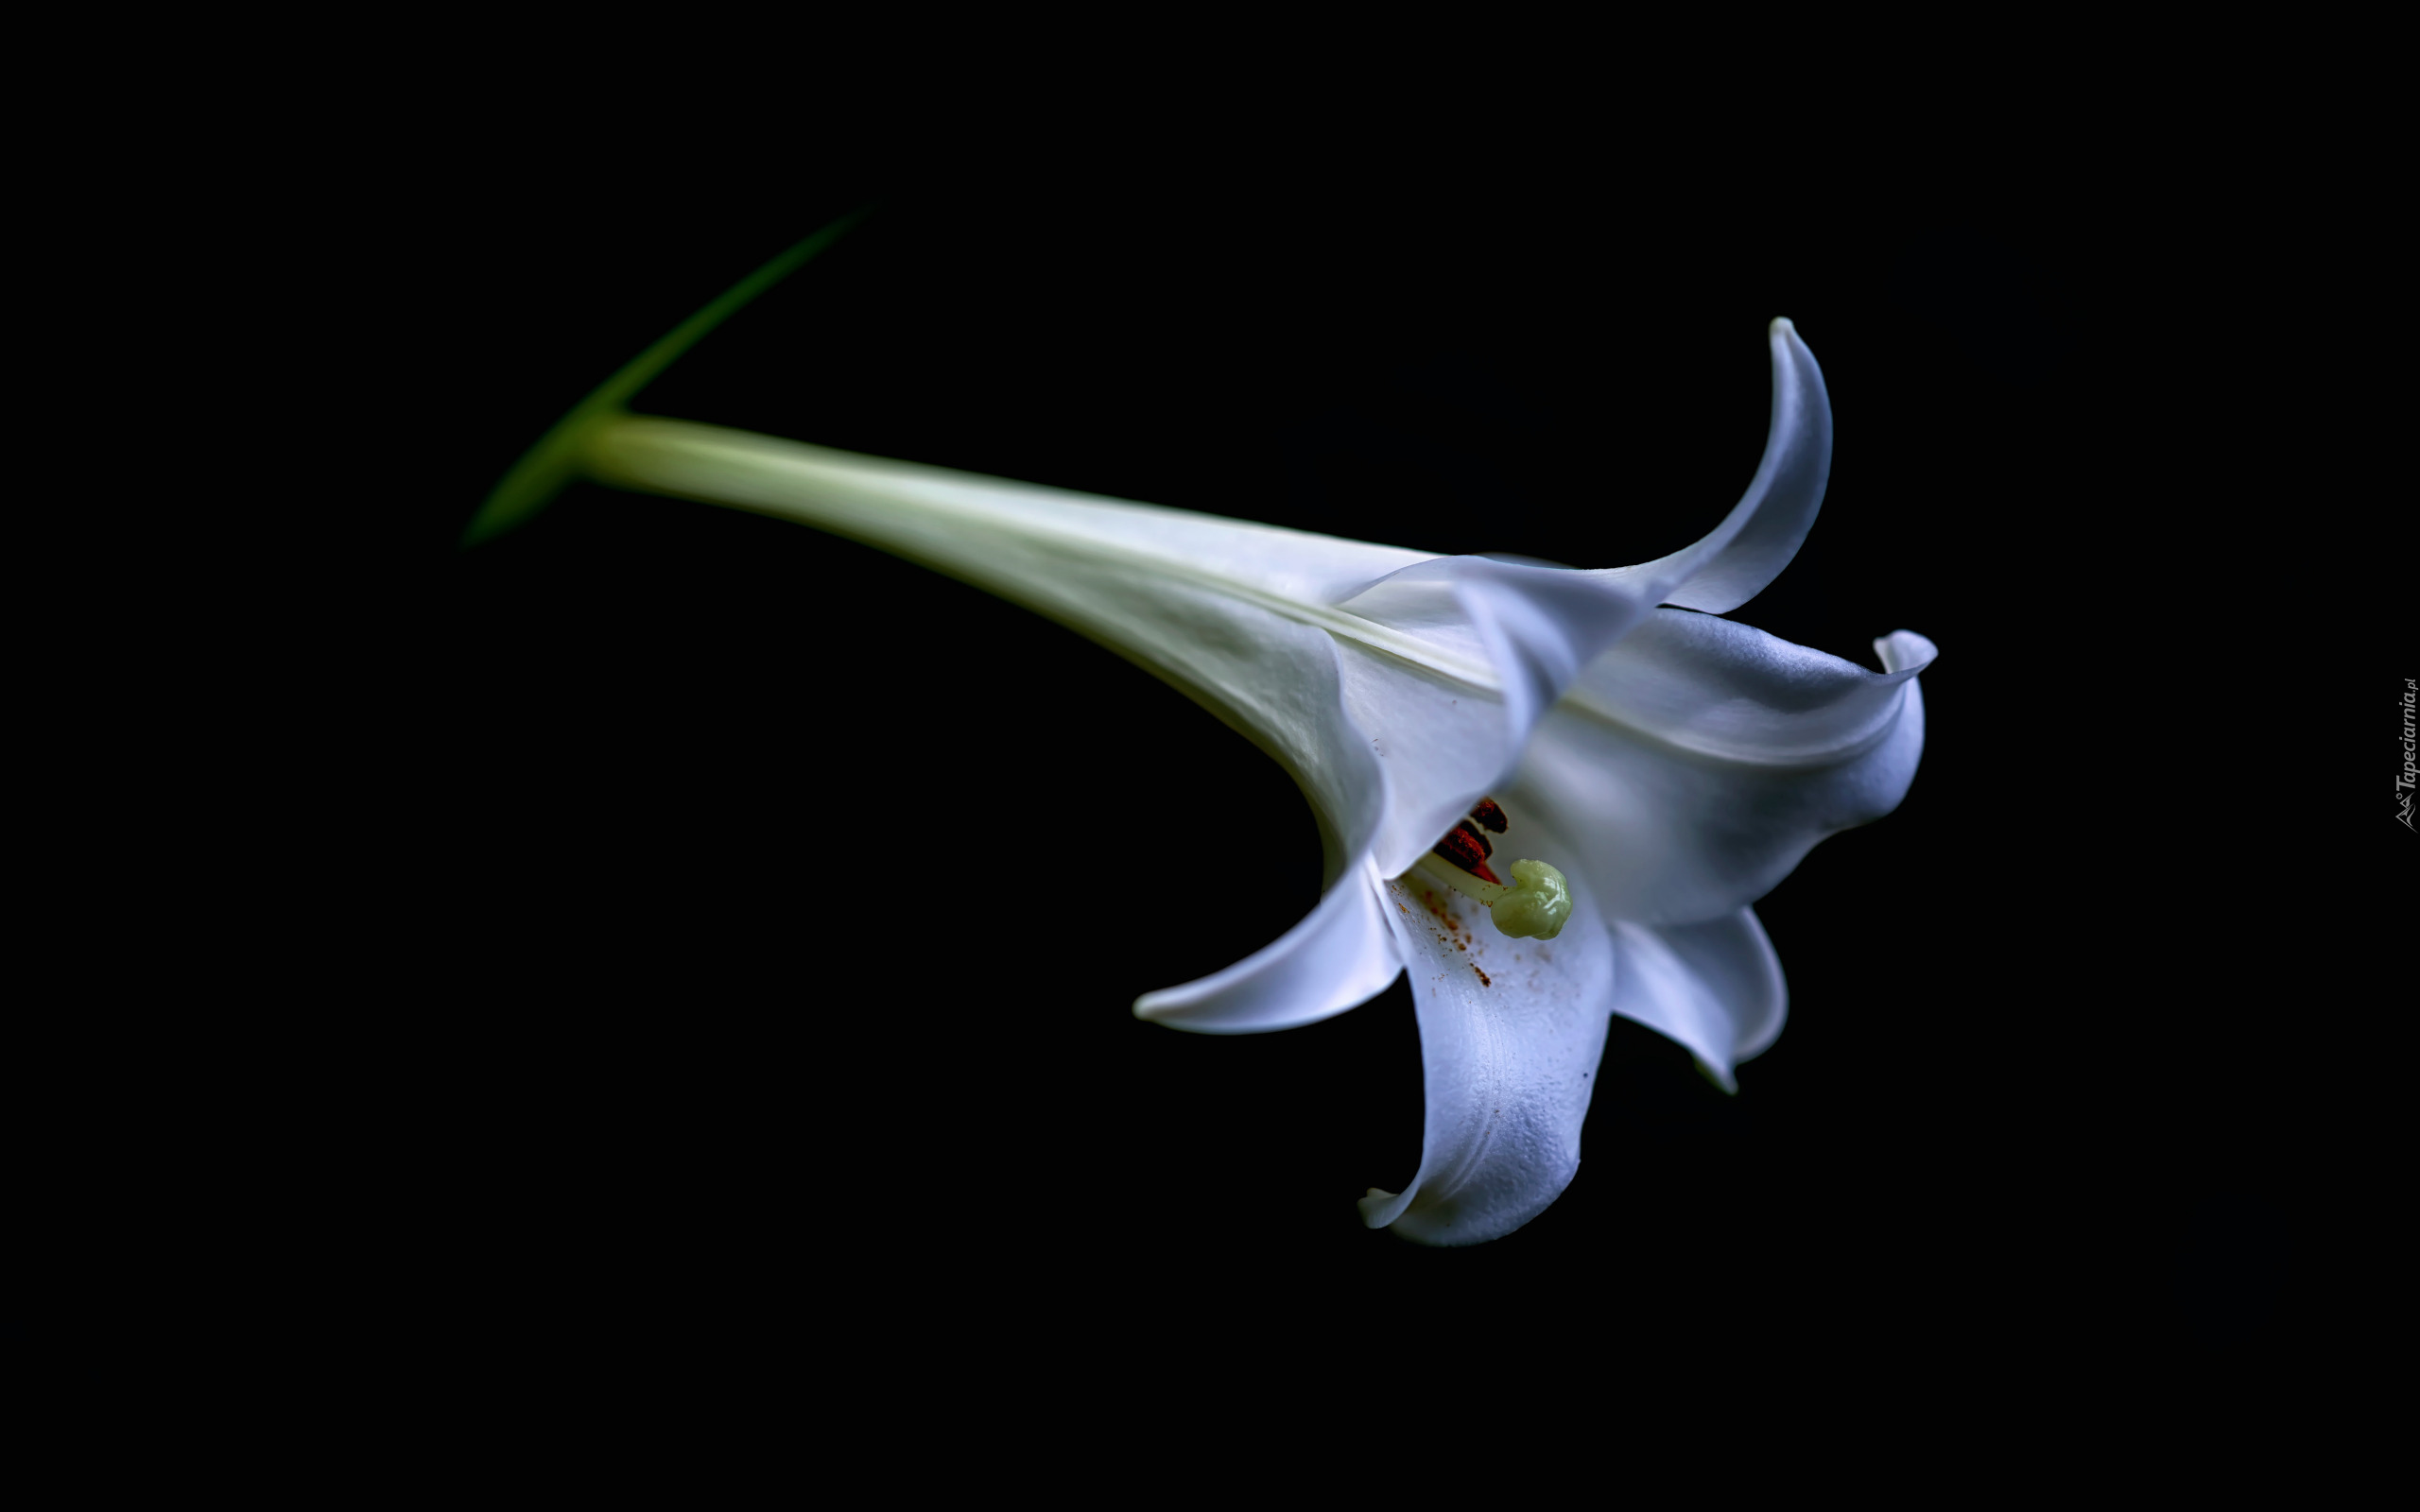 Kwiat, Lilia biała, Tło czarne